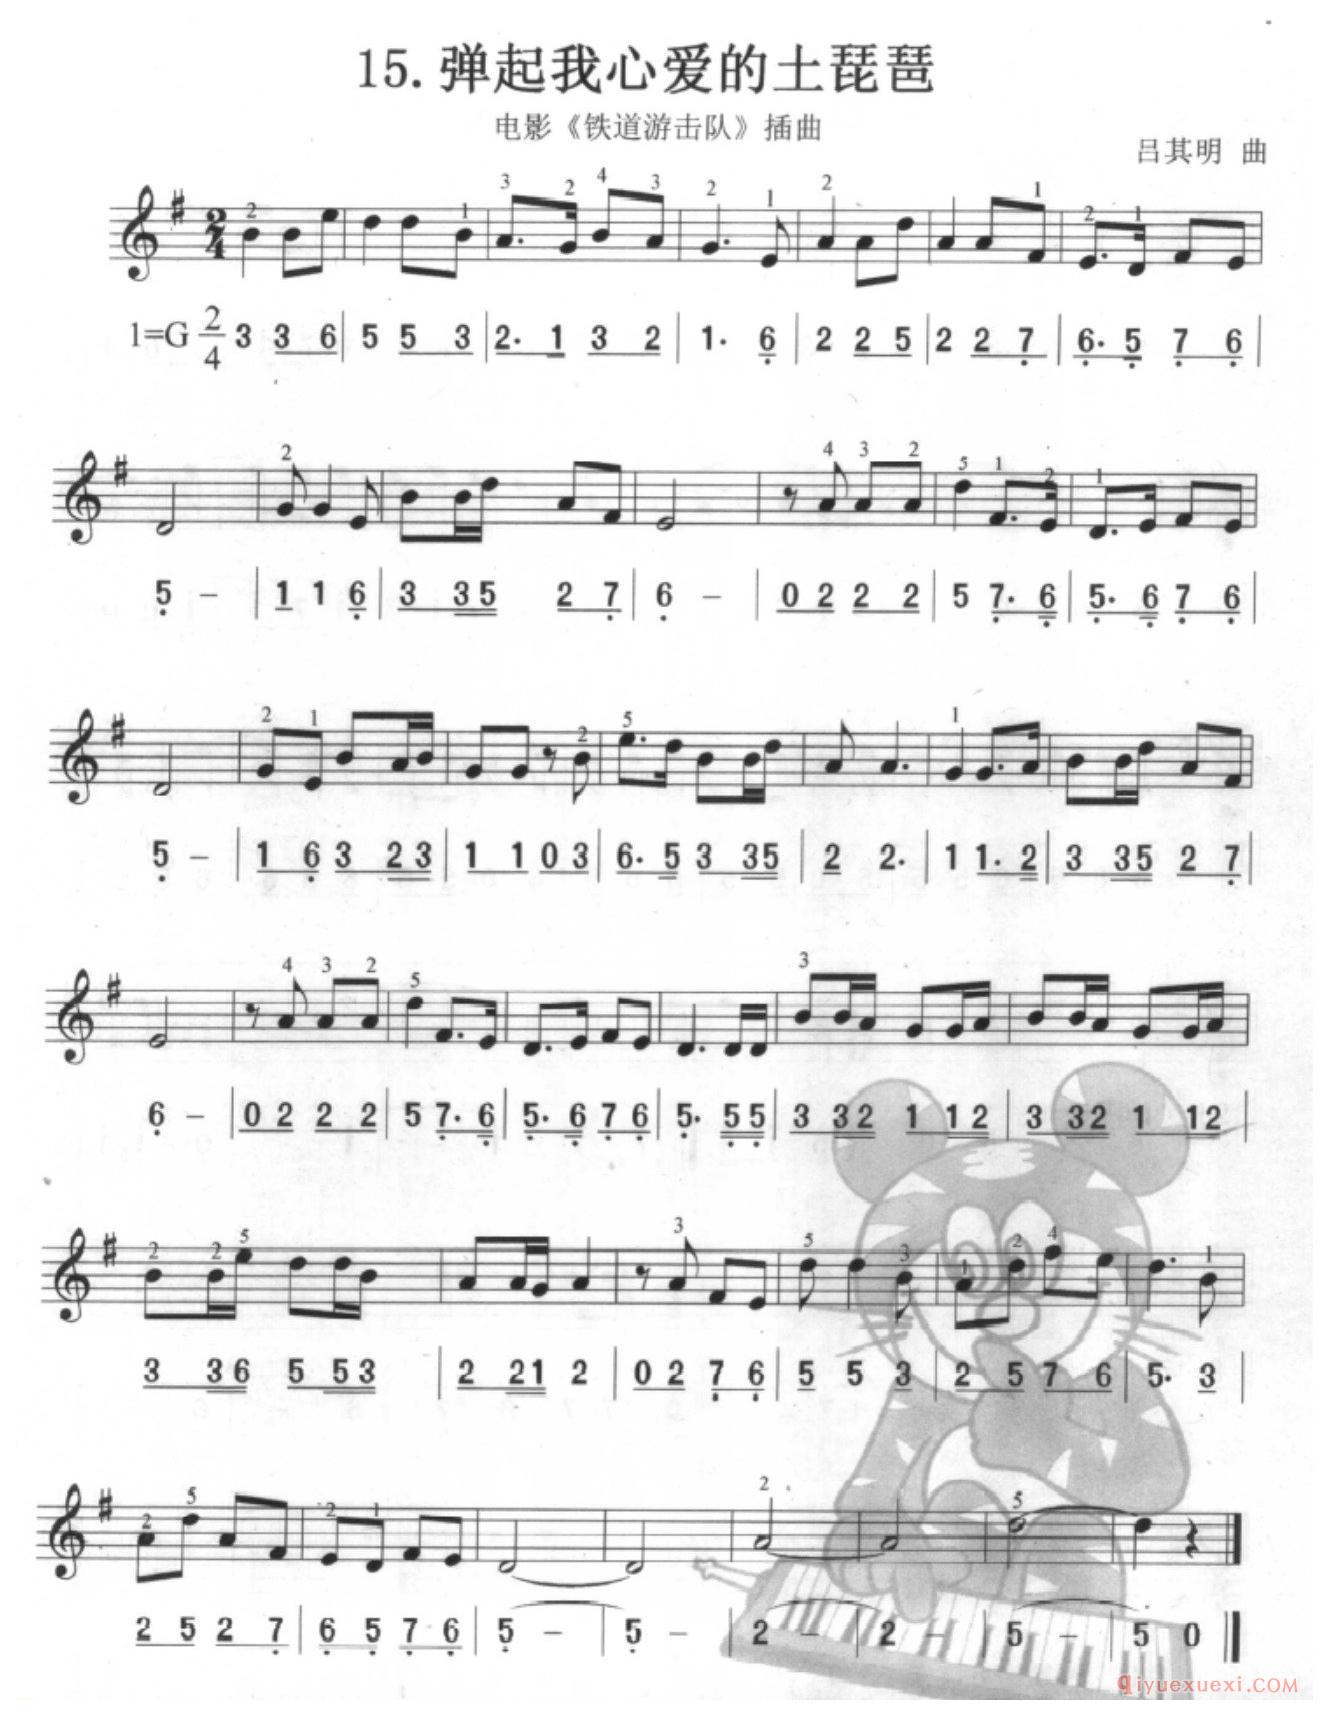 口风琴单声部乐曲《弹起我心爱的土琵琶》一个升号调的练习